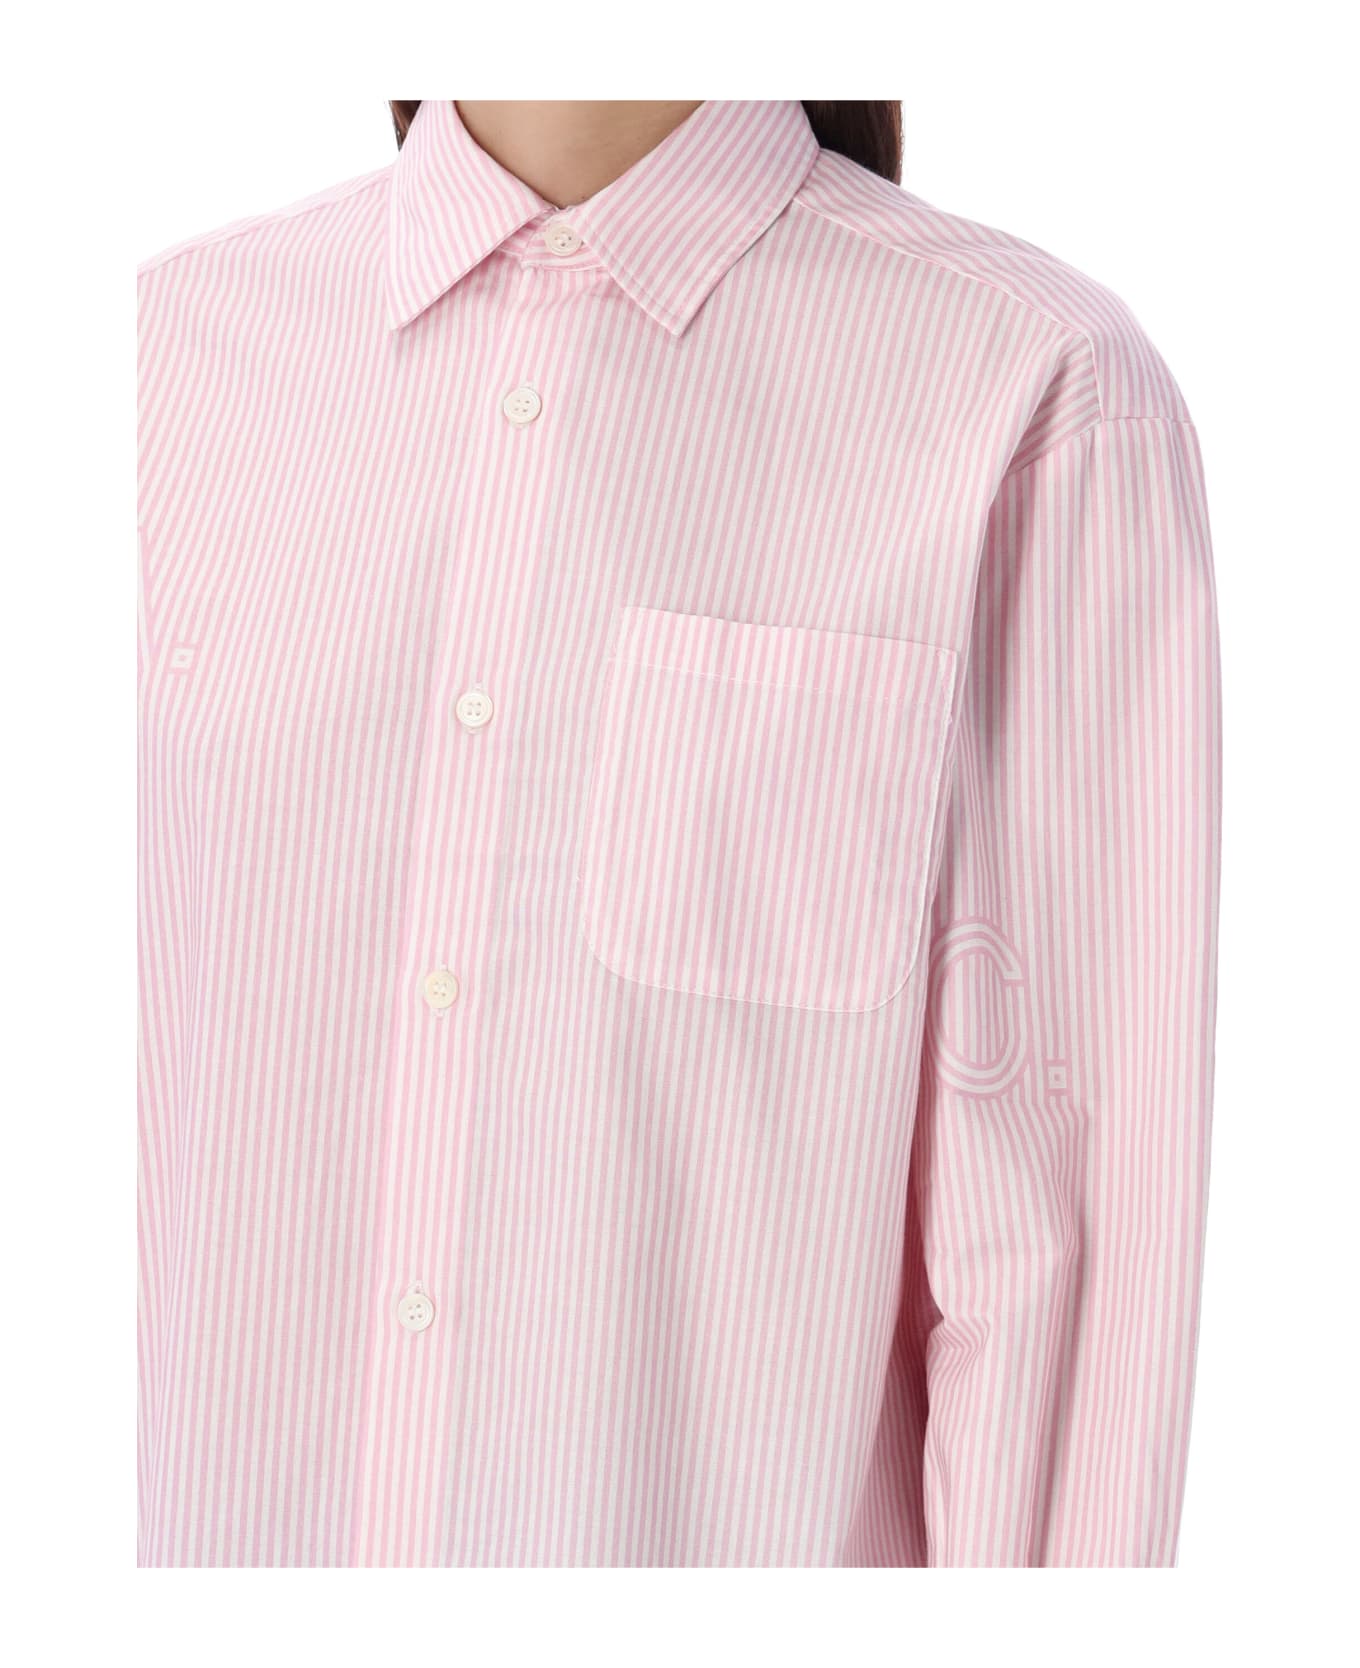 A.P.C. Sela Shirt Stripes - PINK